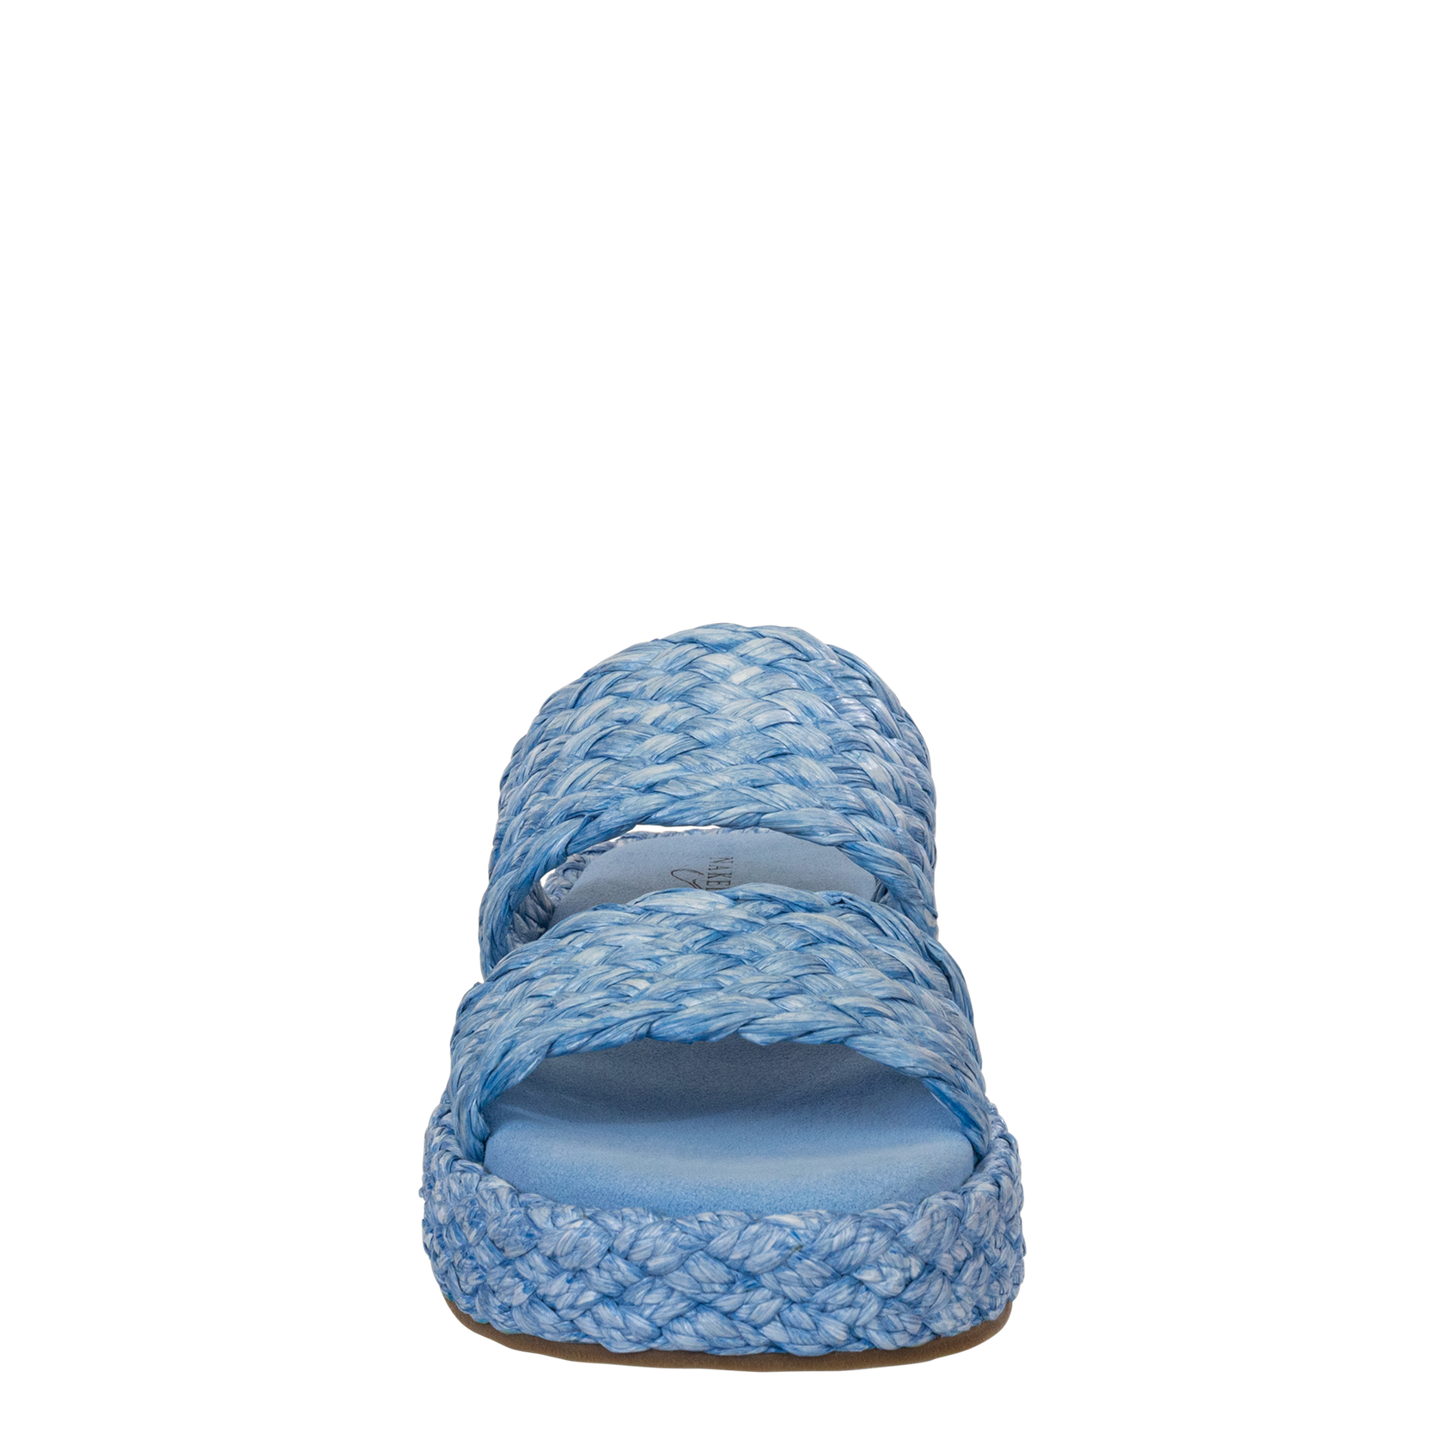 NAKED FEET - SANTORINI in LIGHT BLUE Espadrille Sandals